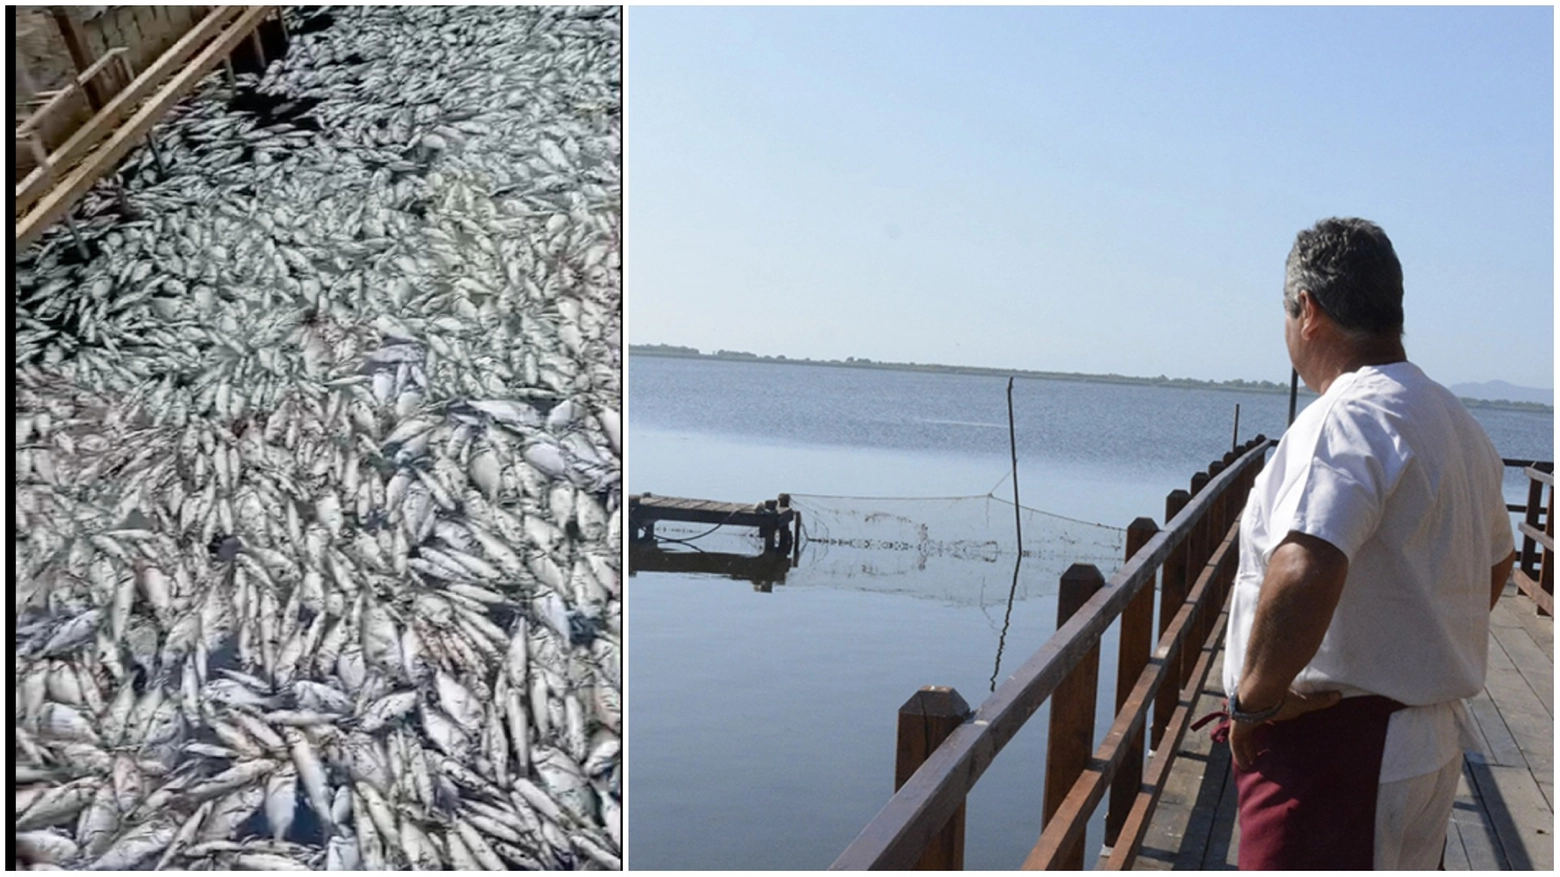 A sinistra la moria dei pesci (foto Ansa), a destra la laguna di Orbetello (foto Aprili)